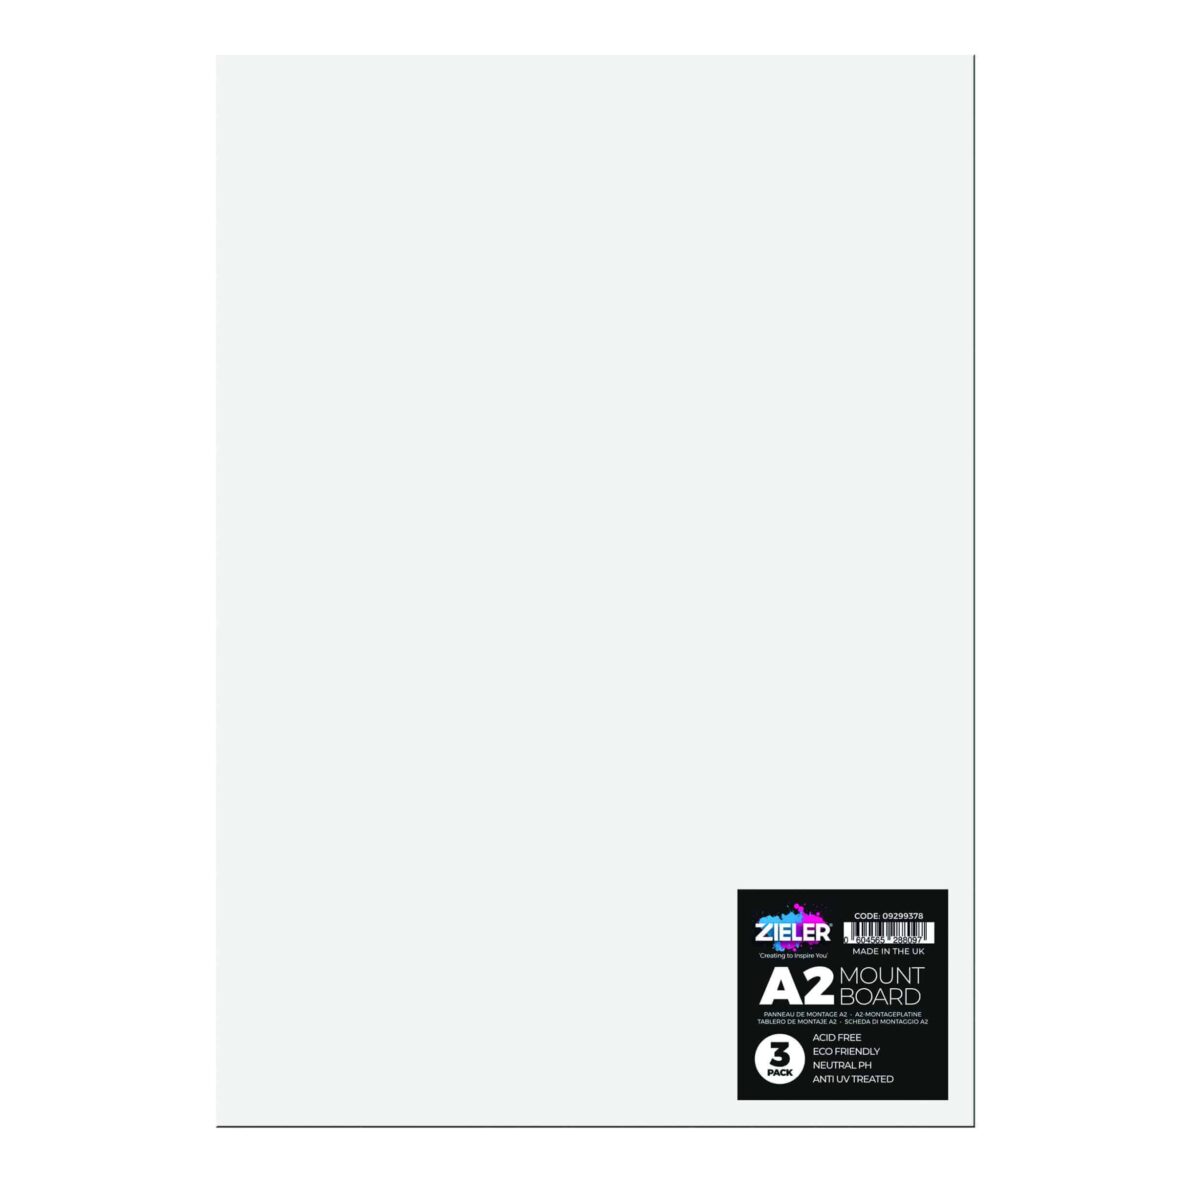 A2 Mount Board White 09299379 - Zieler Art Supplies